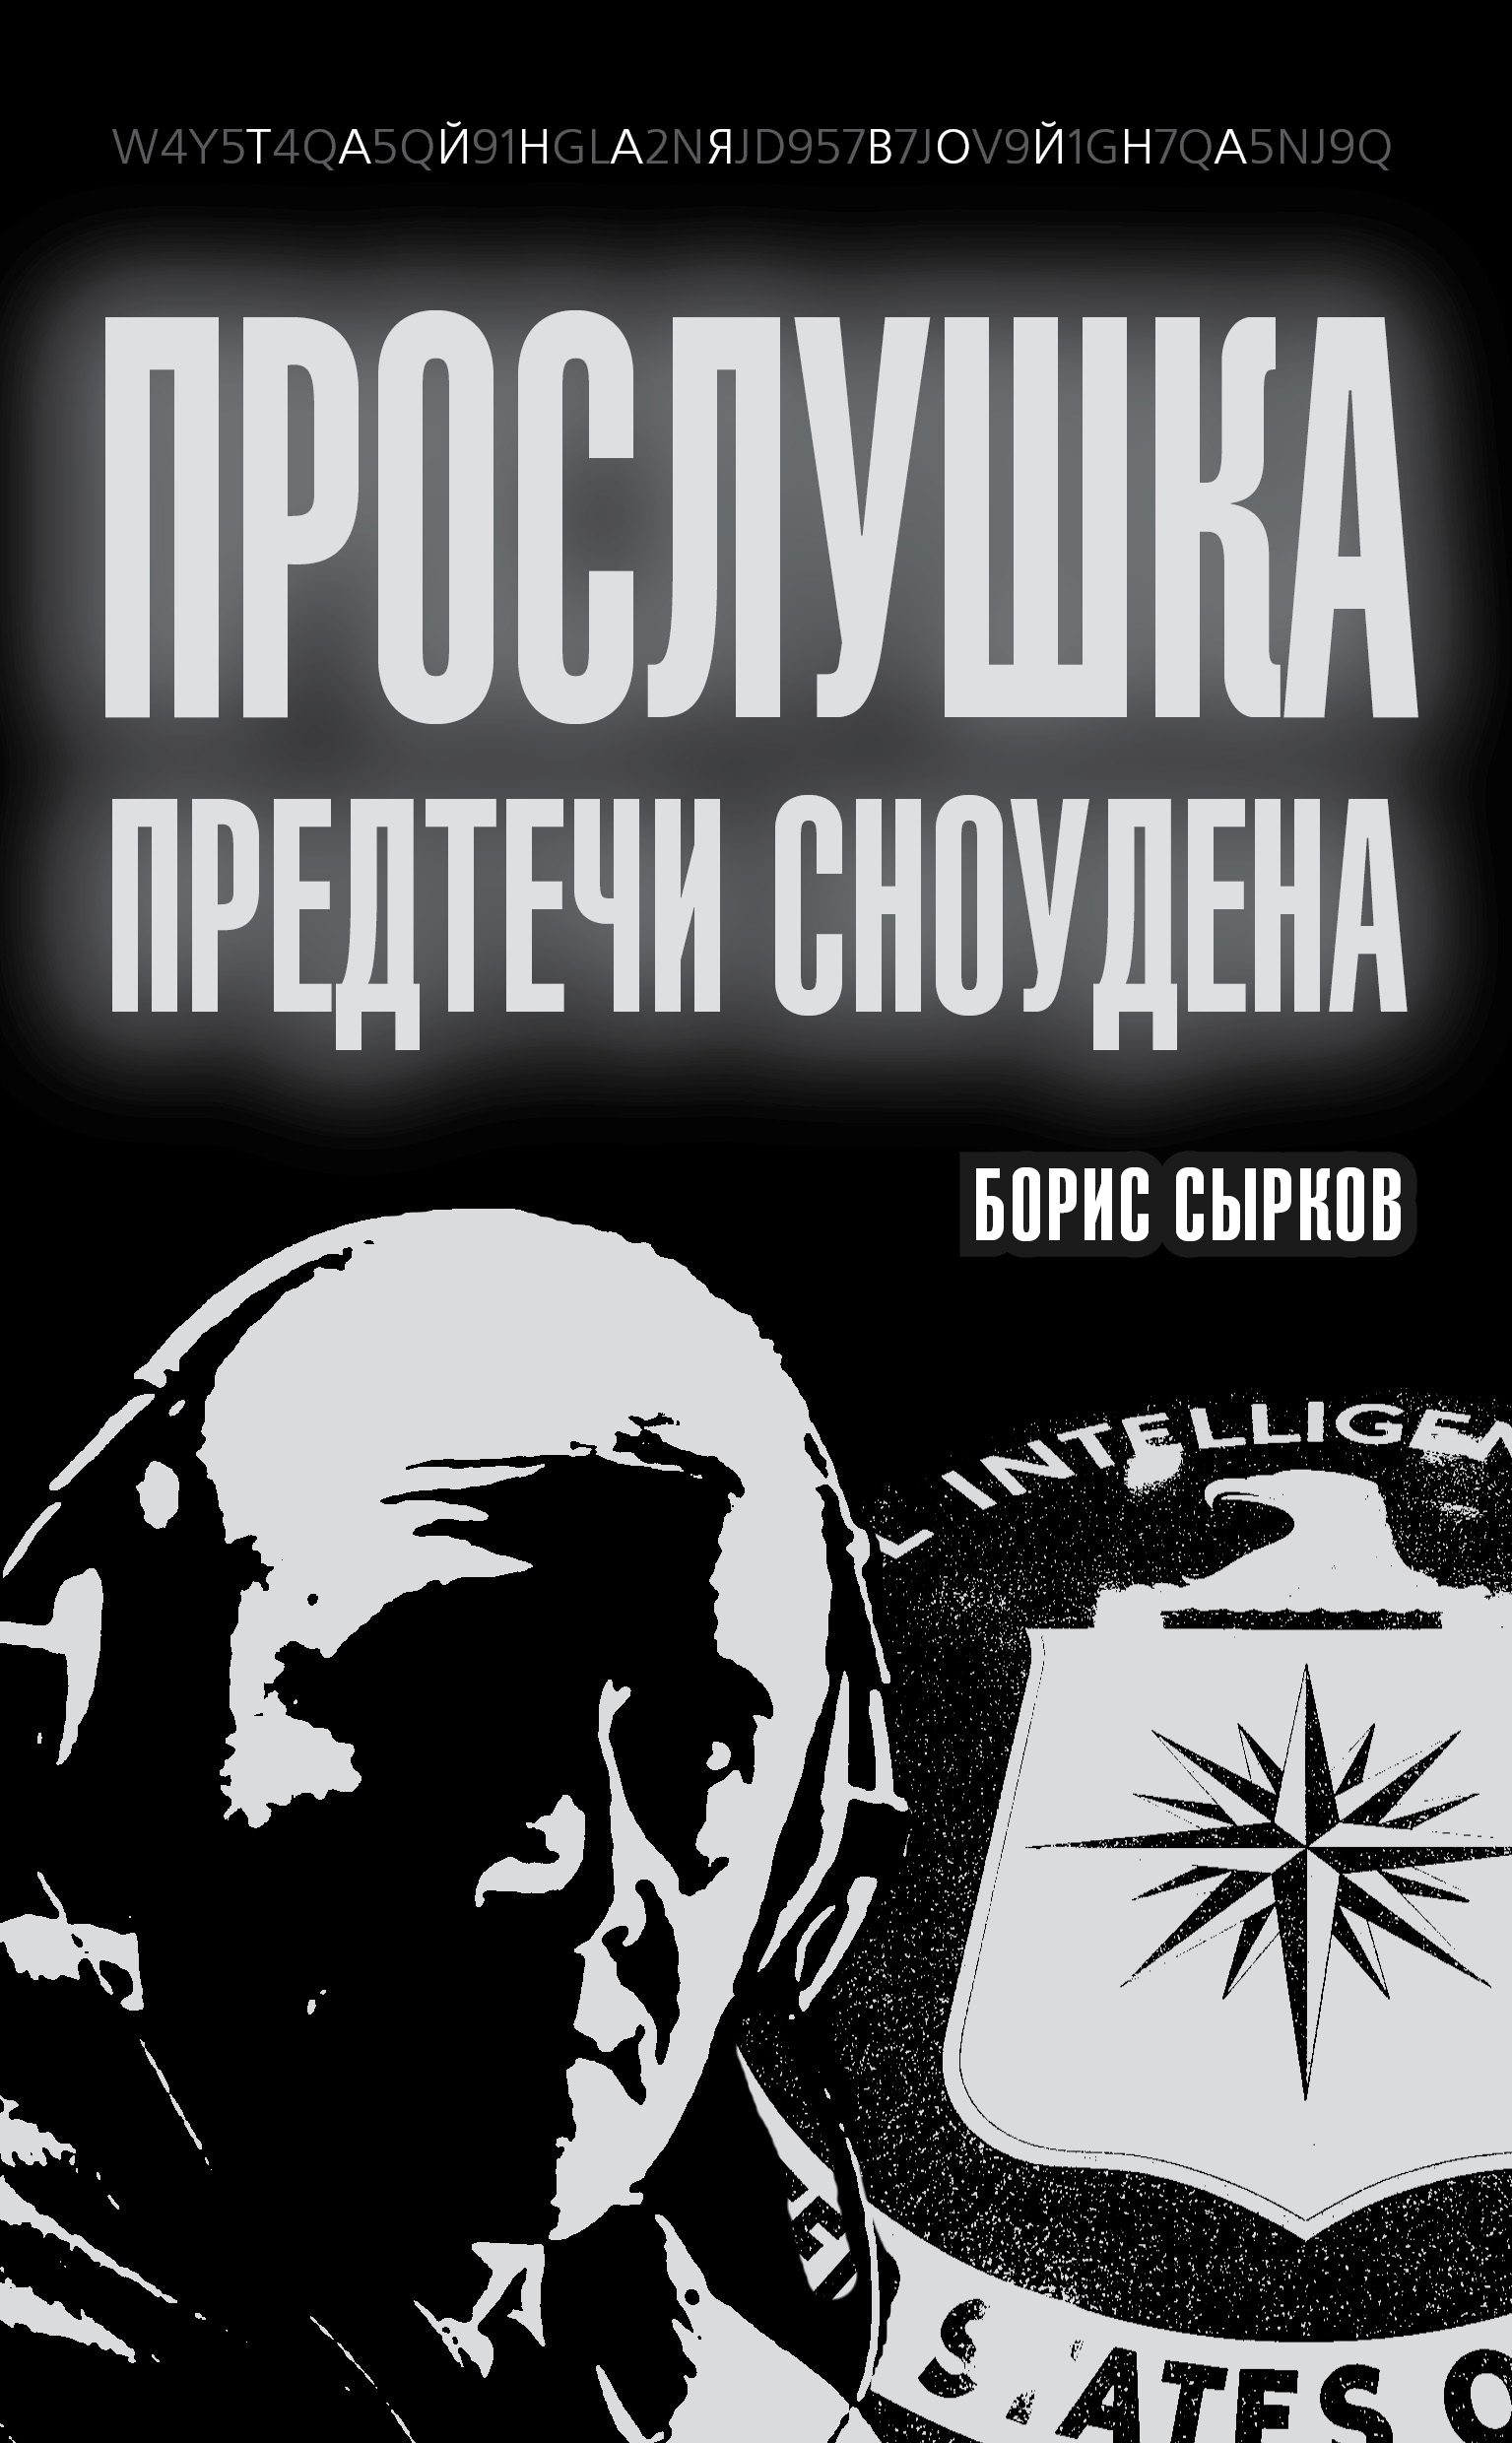 Книга Прослушка. Предтечи Сноудена из серии , созданная Борис Сырков, может относится к жанру Военное дело, спецслужбы, Политика, политология. Стоимость электронной книги Прослушка. Предтечи Сноудена с идентификатором 17693413 составляет 149.00 руб.